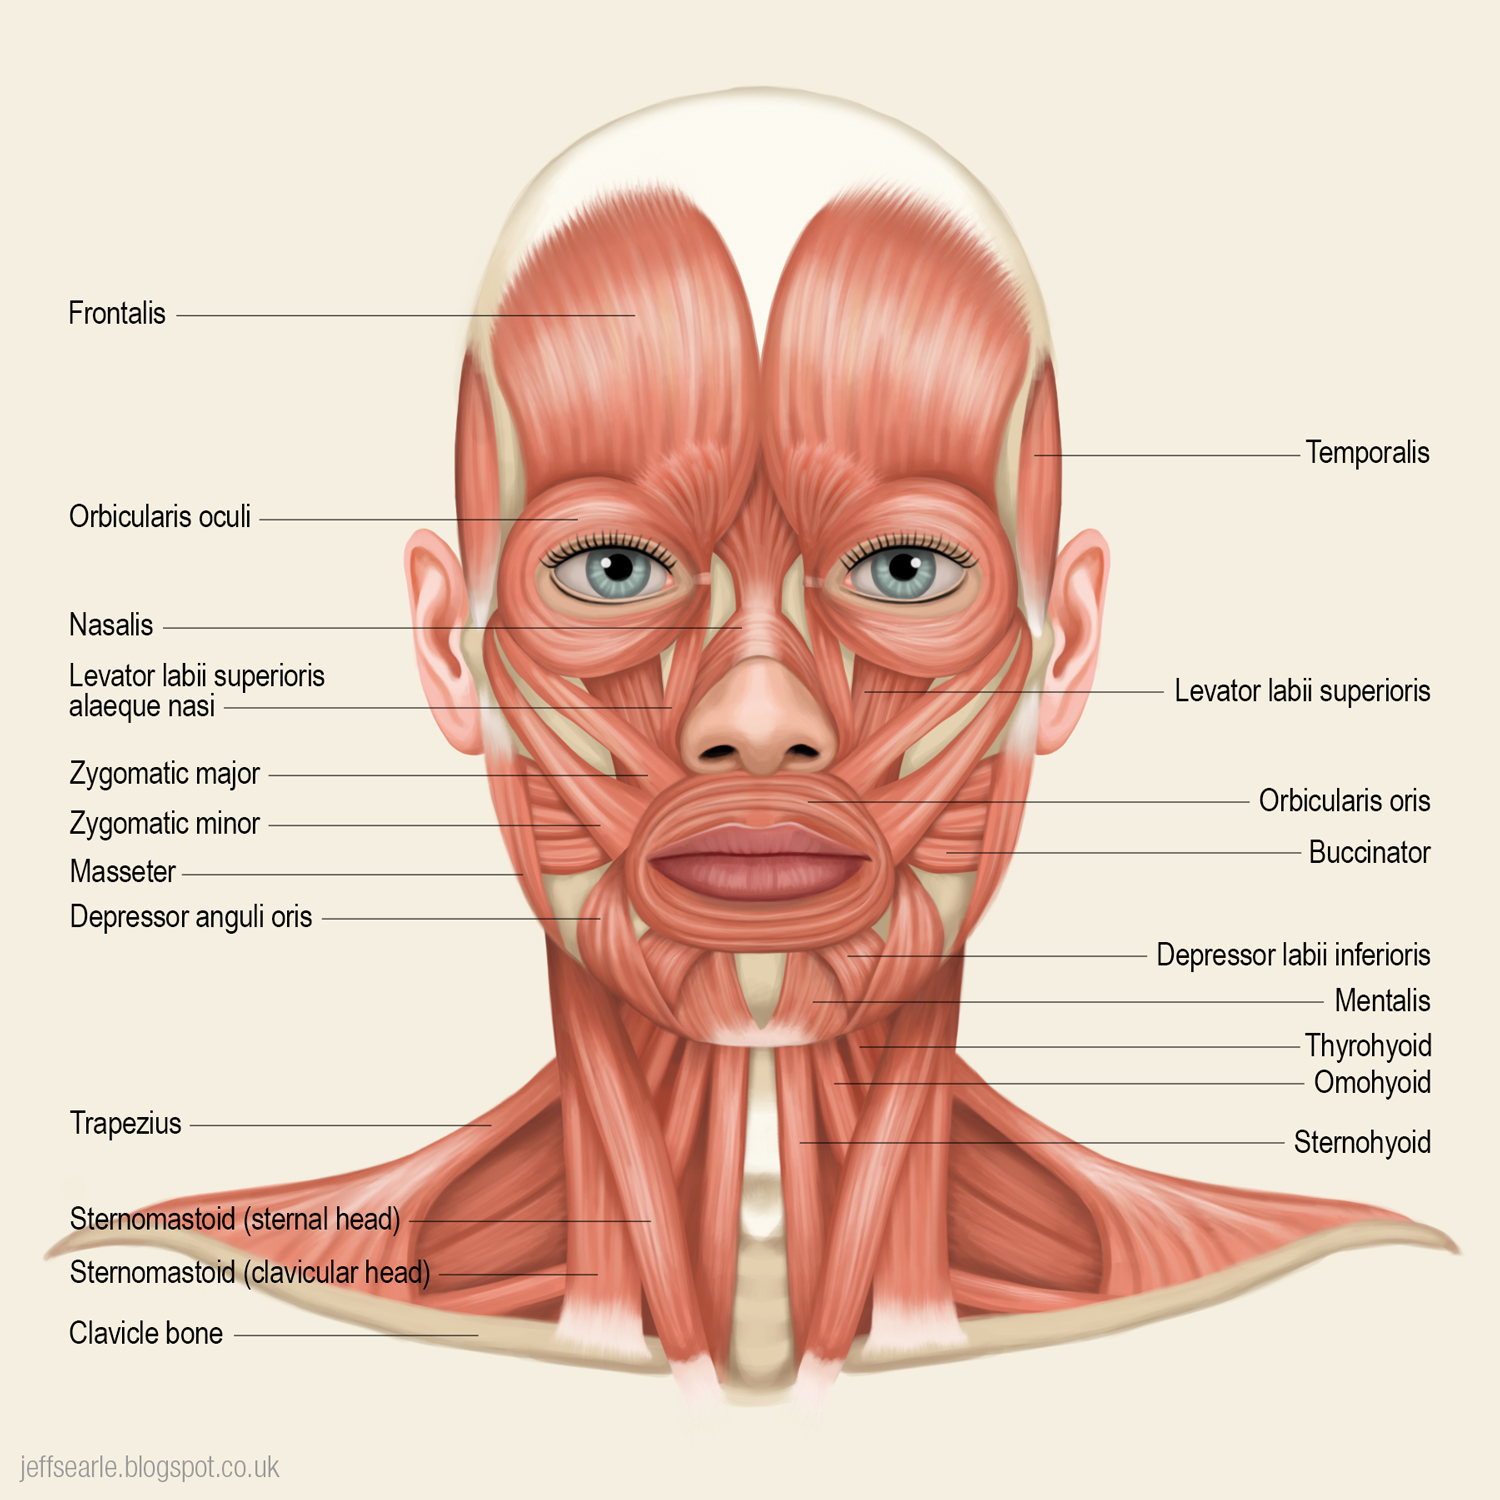 Косметология мышцы. Мышцы лица анатомия атлас с пояснениями. Мимические мышцы анатомия человека. Мимические мышцы лица анатомия атлас.